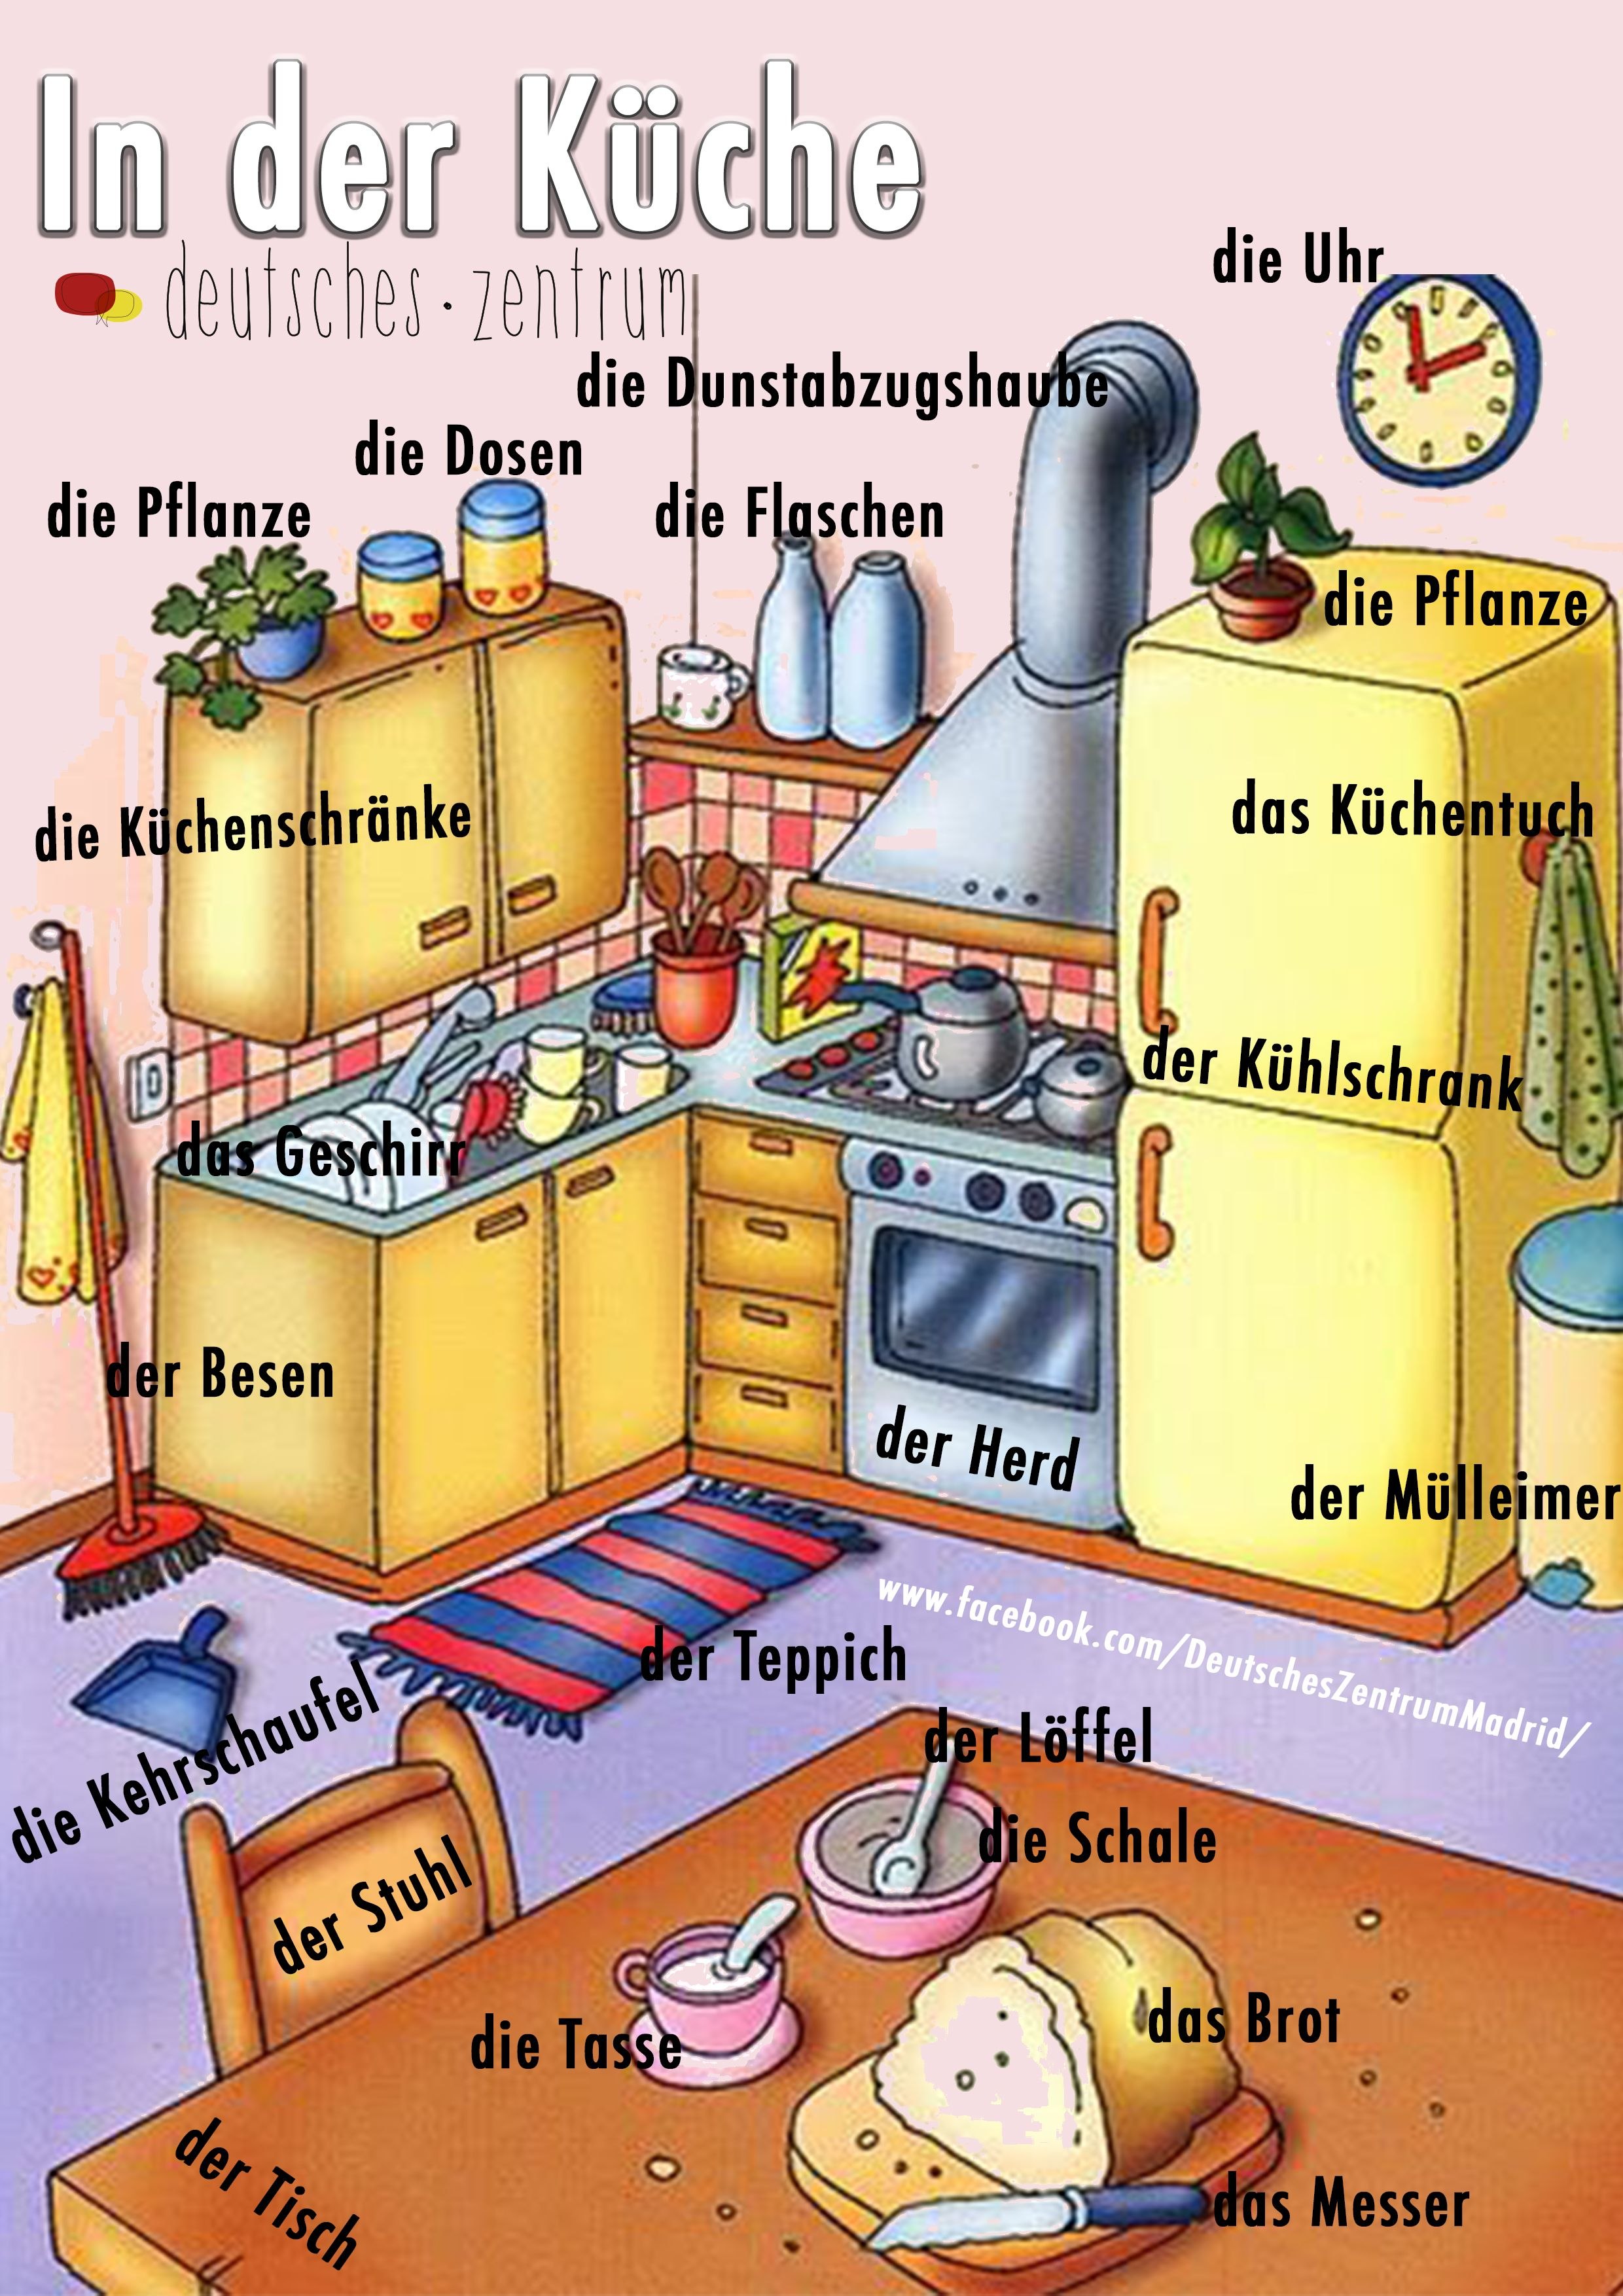 еда картинки на немецком языке